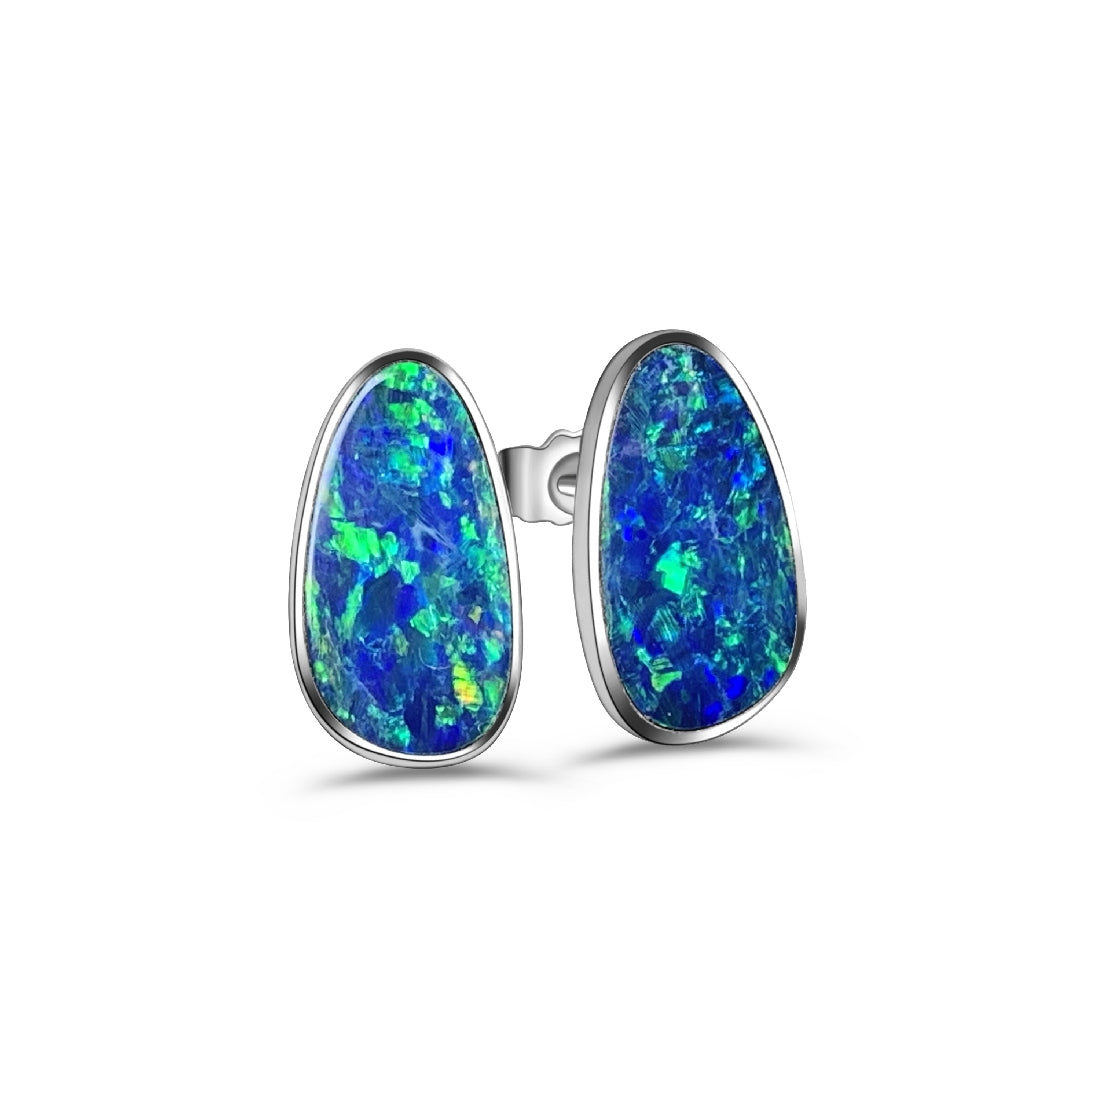 Sterling Silver Opal 14x7mm Freeform studs - Masterpiece Jewellery Opal & Gems Sydney Australia | Online Shop